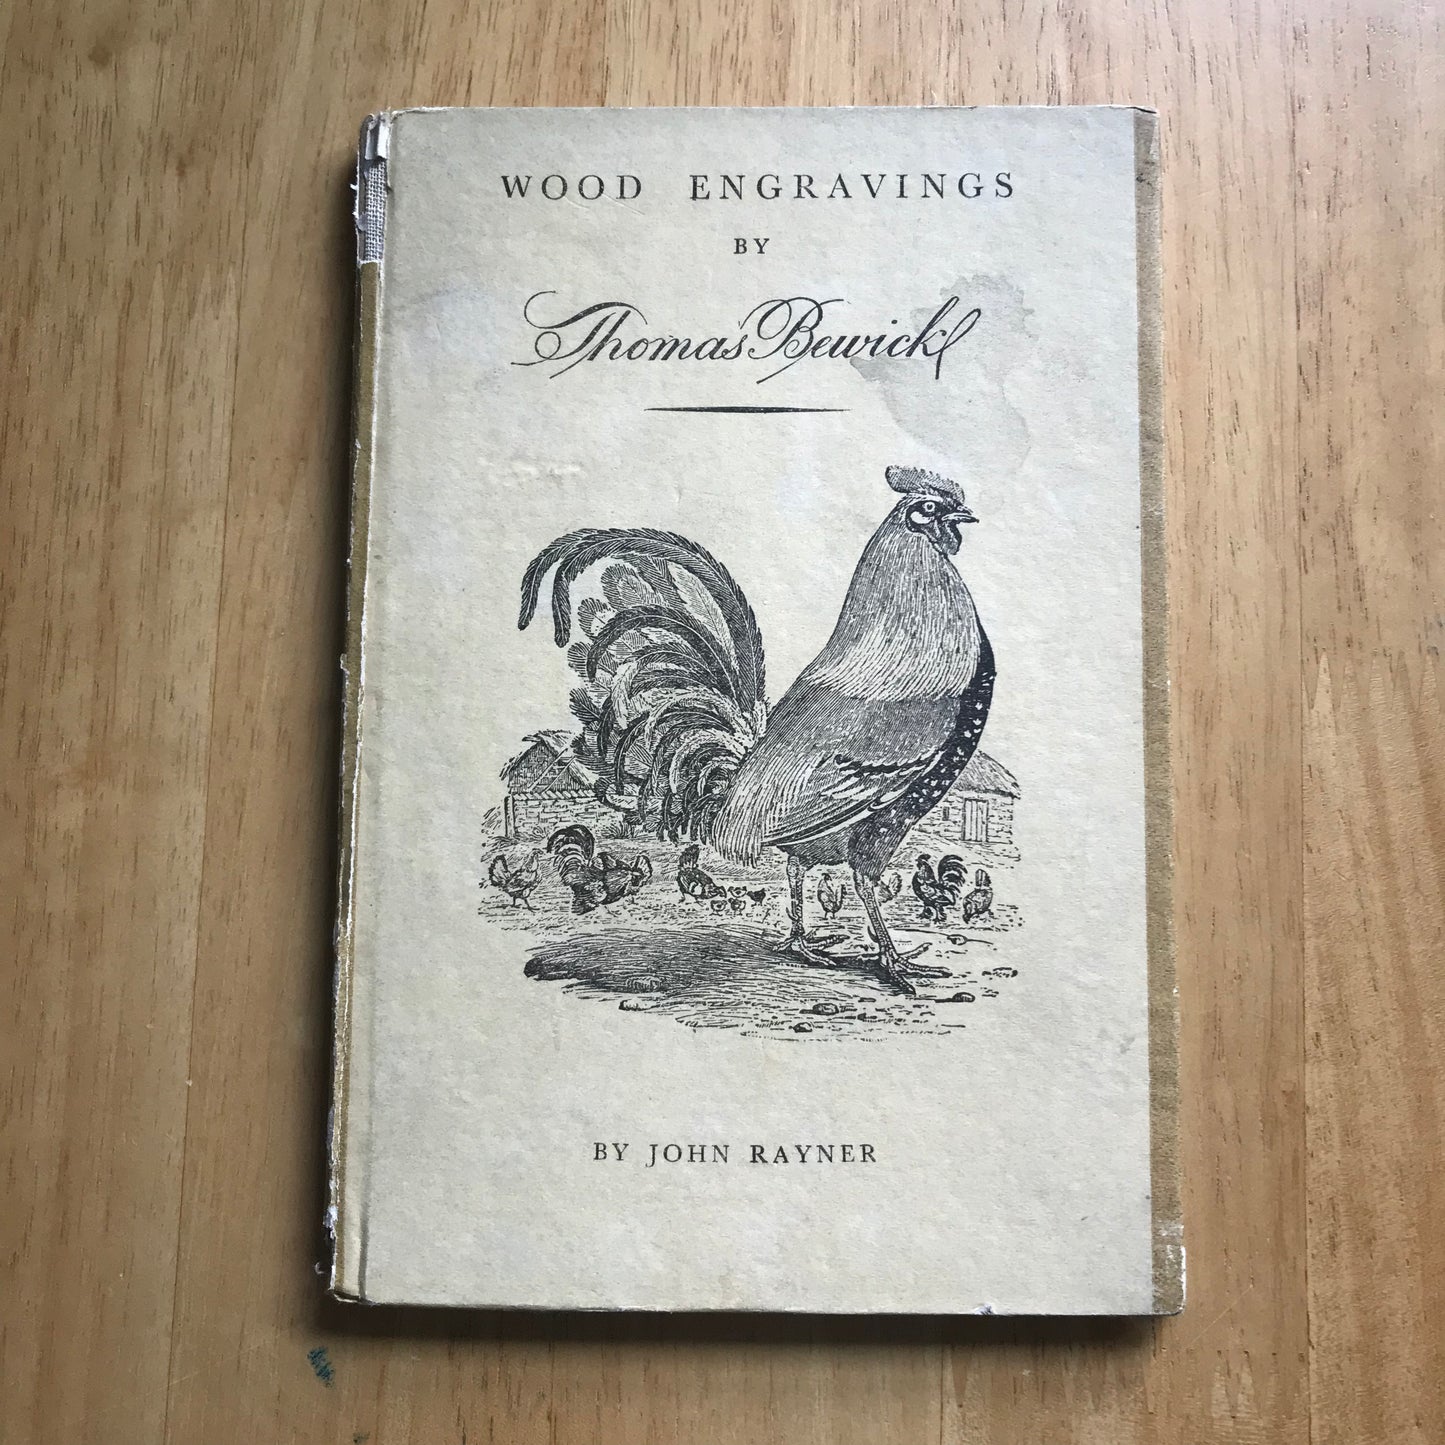 1947 Holzstiche von Thomas Bewick Intro John Raynor (Königspinguin)